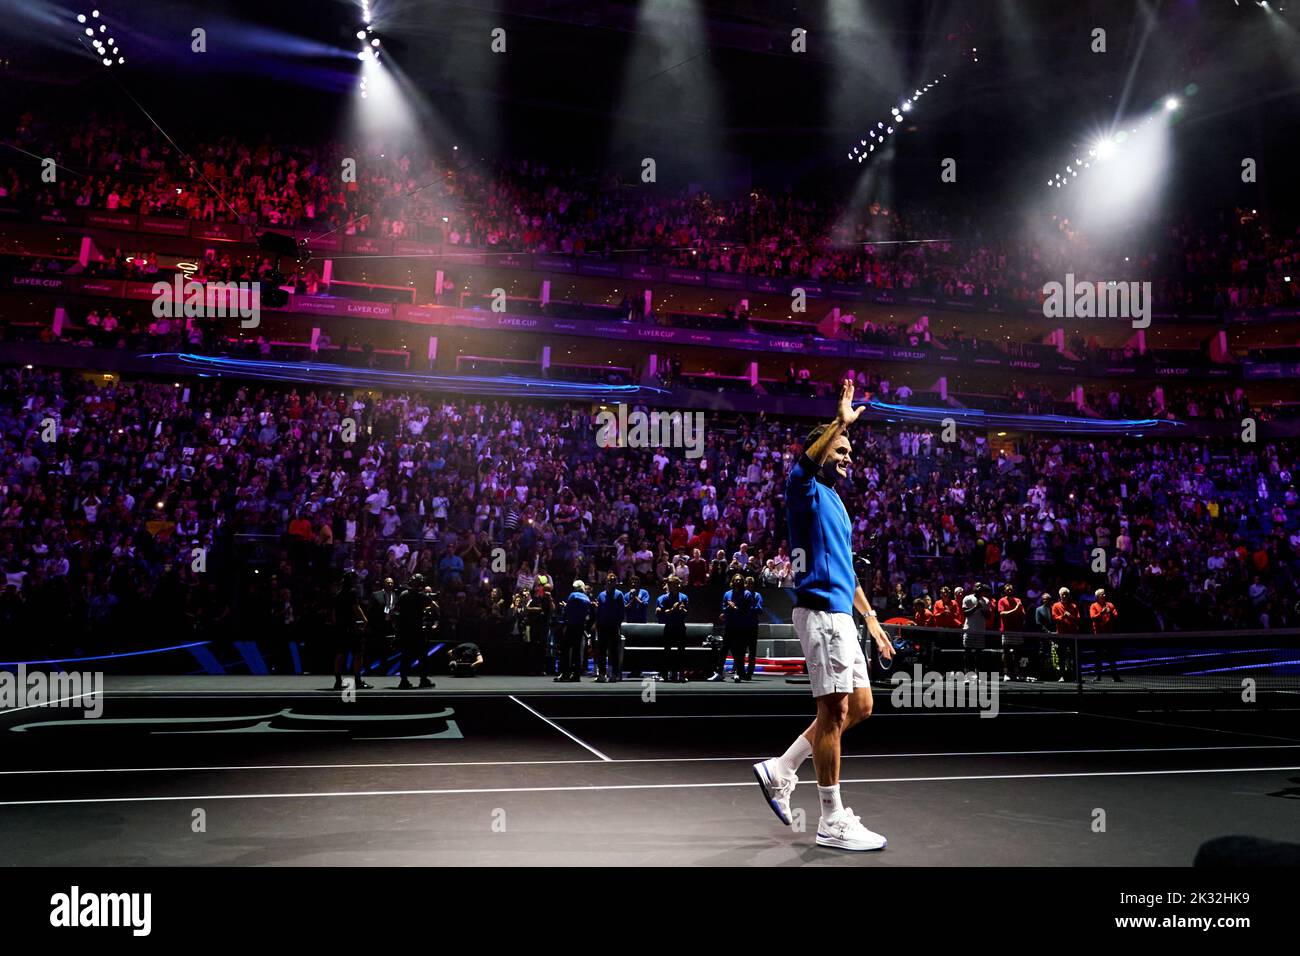 Roger Federer después de su último partido competitivo en el primer día de la Copa Laver en el O2 Arena, Londres. Fecha de la foto: Viernes 23 de septiembre de 2022. Foto de stock